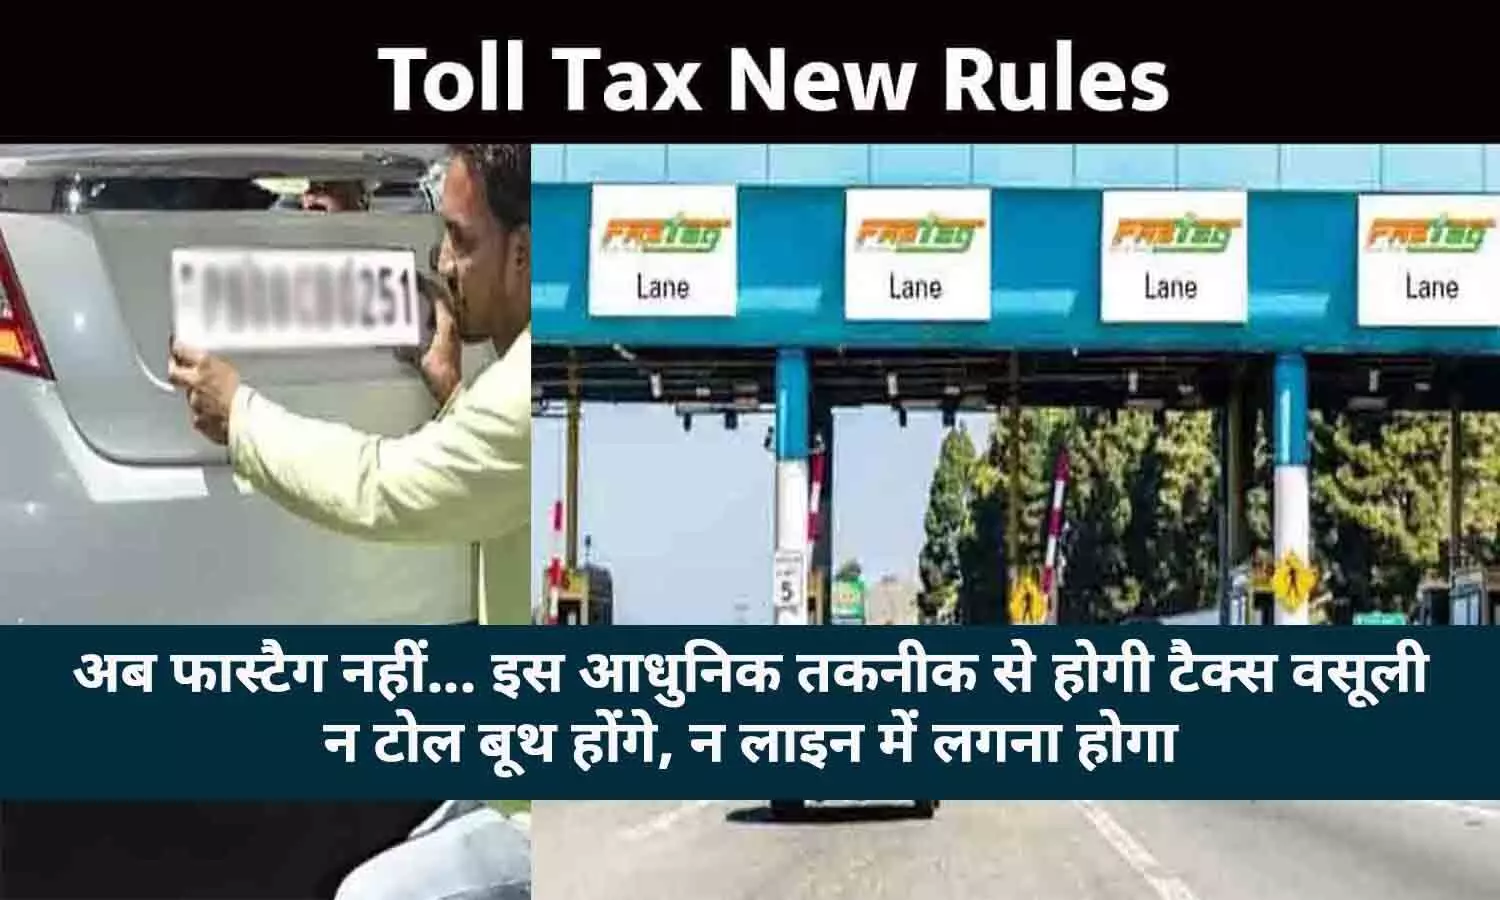 Toll Tax New Rules 2023: वाहन चालक ध्यान दे! अब Fastag से नहीं... नंबर प्लेट से कटेगा Toll Tax, पूरे देश में लागू होगा नियम